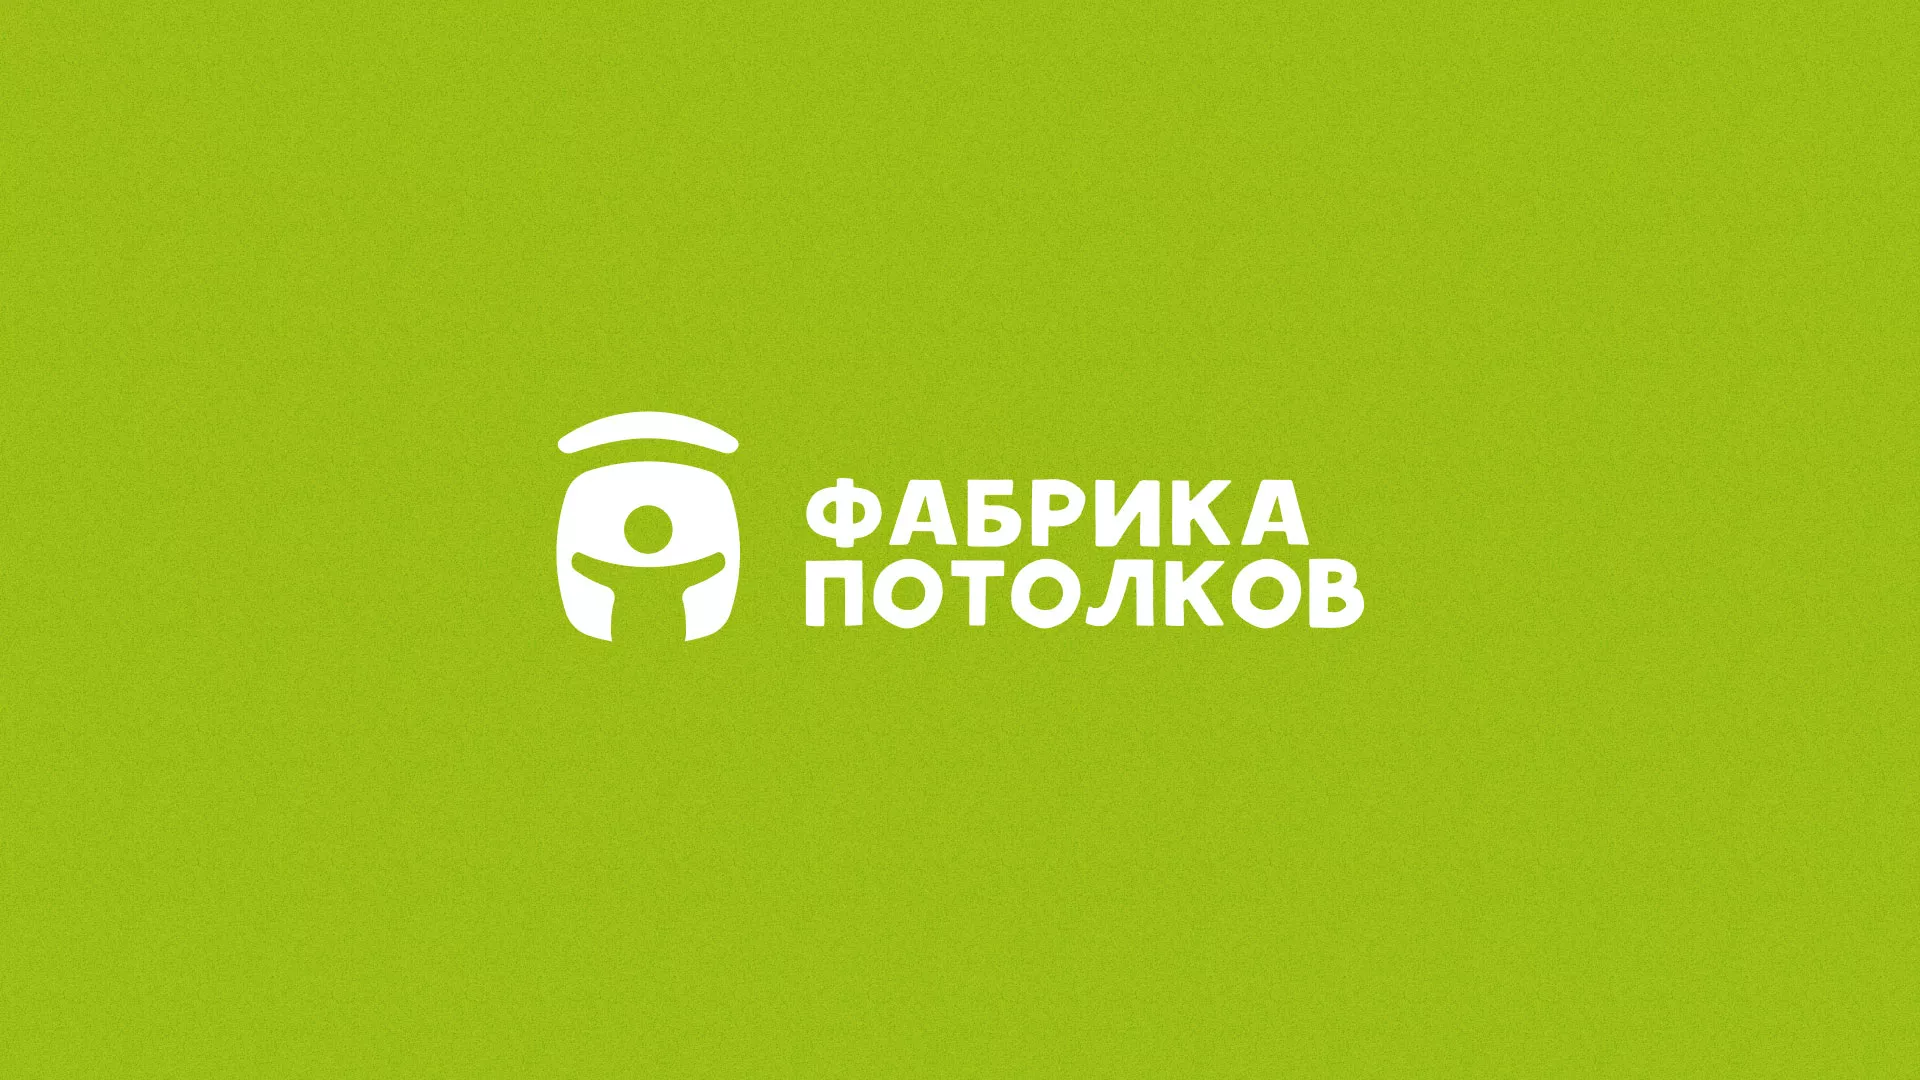 Разработка логотипа для производства натяжных потолков в Славянске-на-Кубани